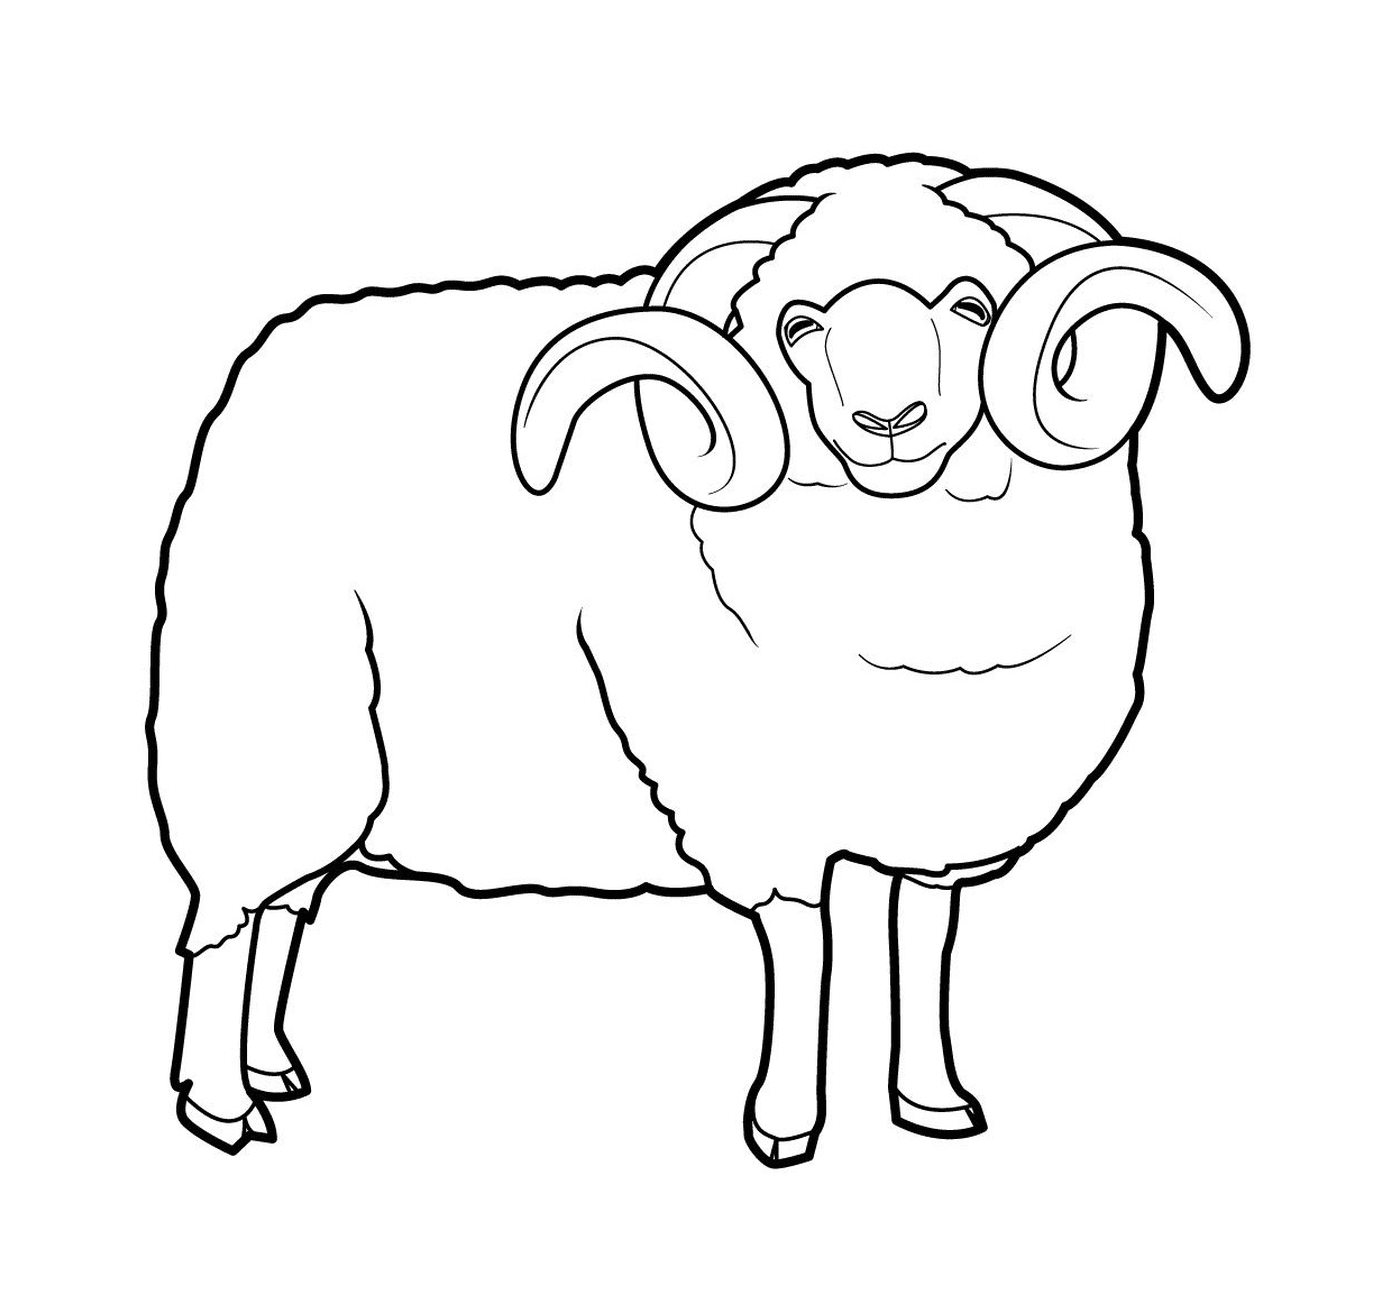  Impresionante oveja con cuernos 